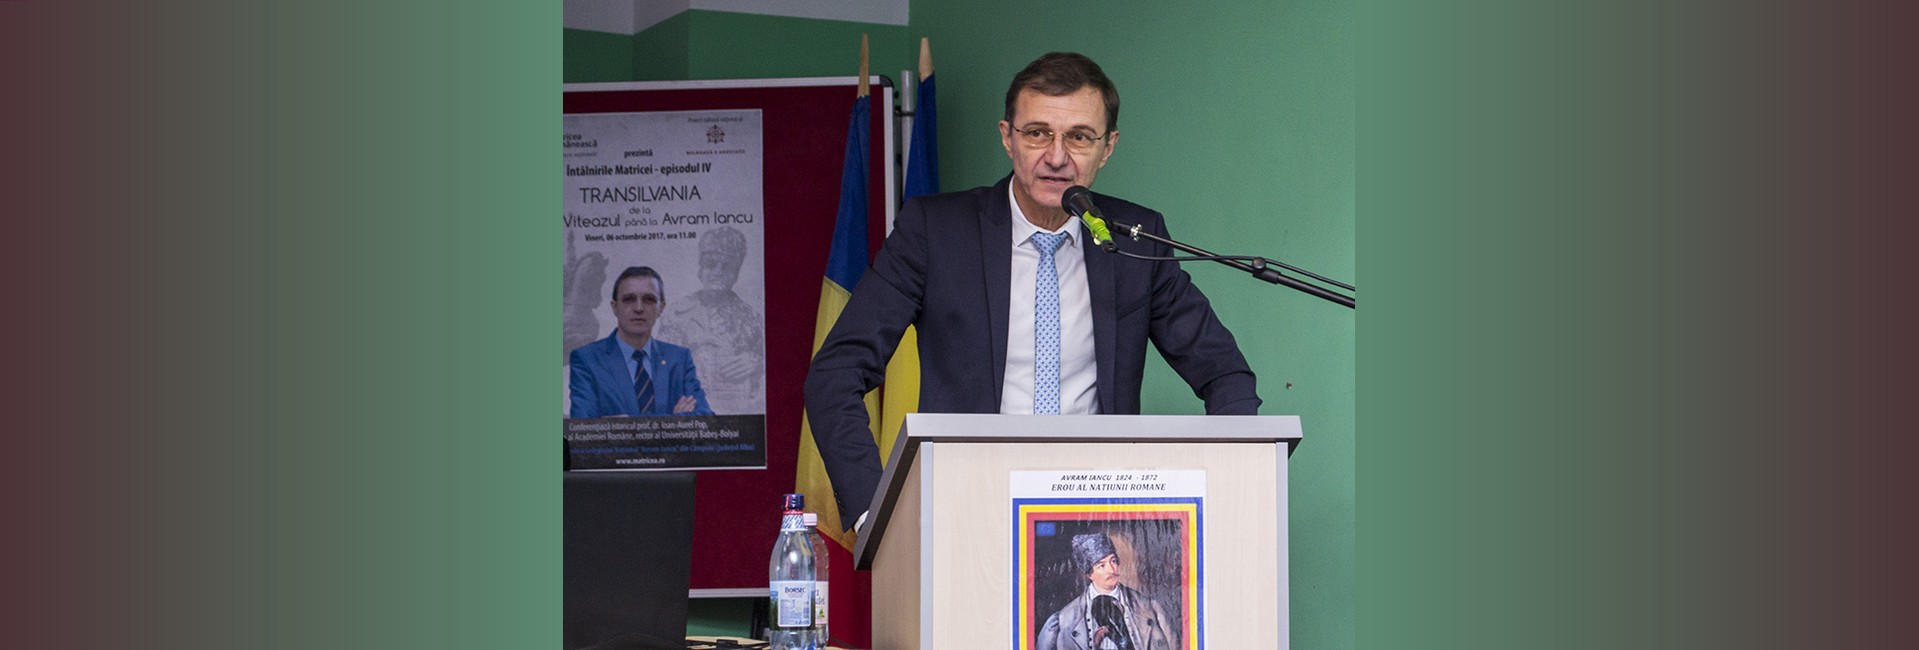 Ioan-Aurel Pop la Întâlnirile Matricei IV despre genocid cultural în România, românii şi rolul lor în istorie slider